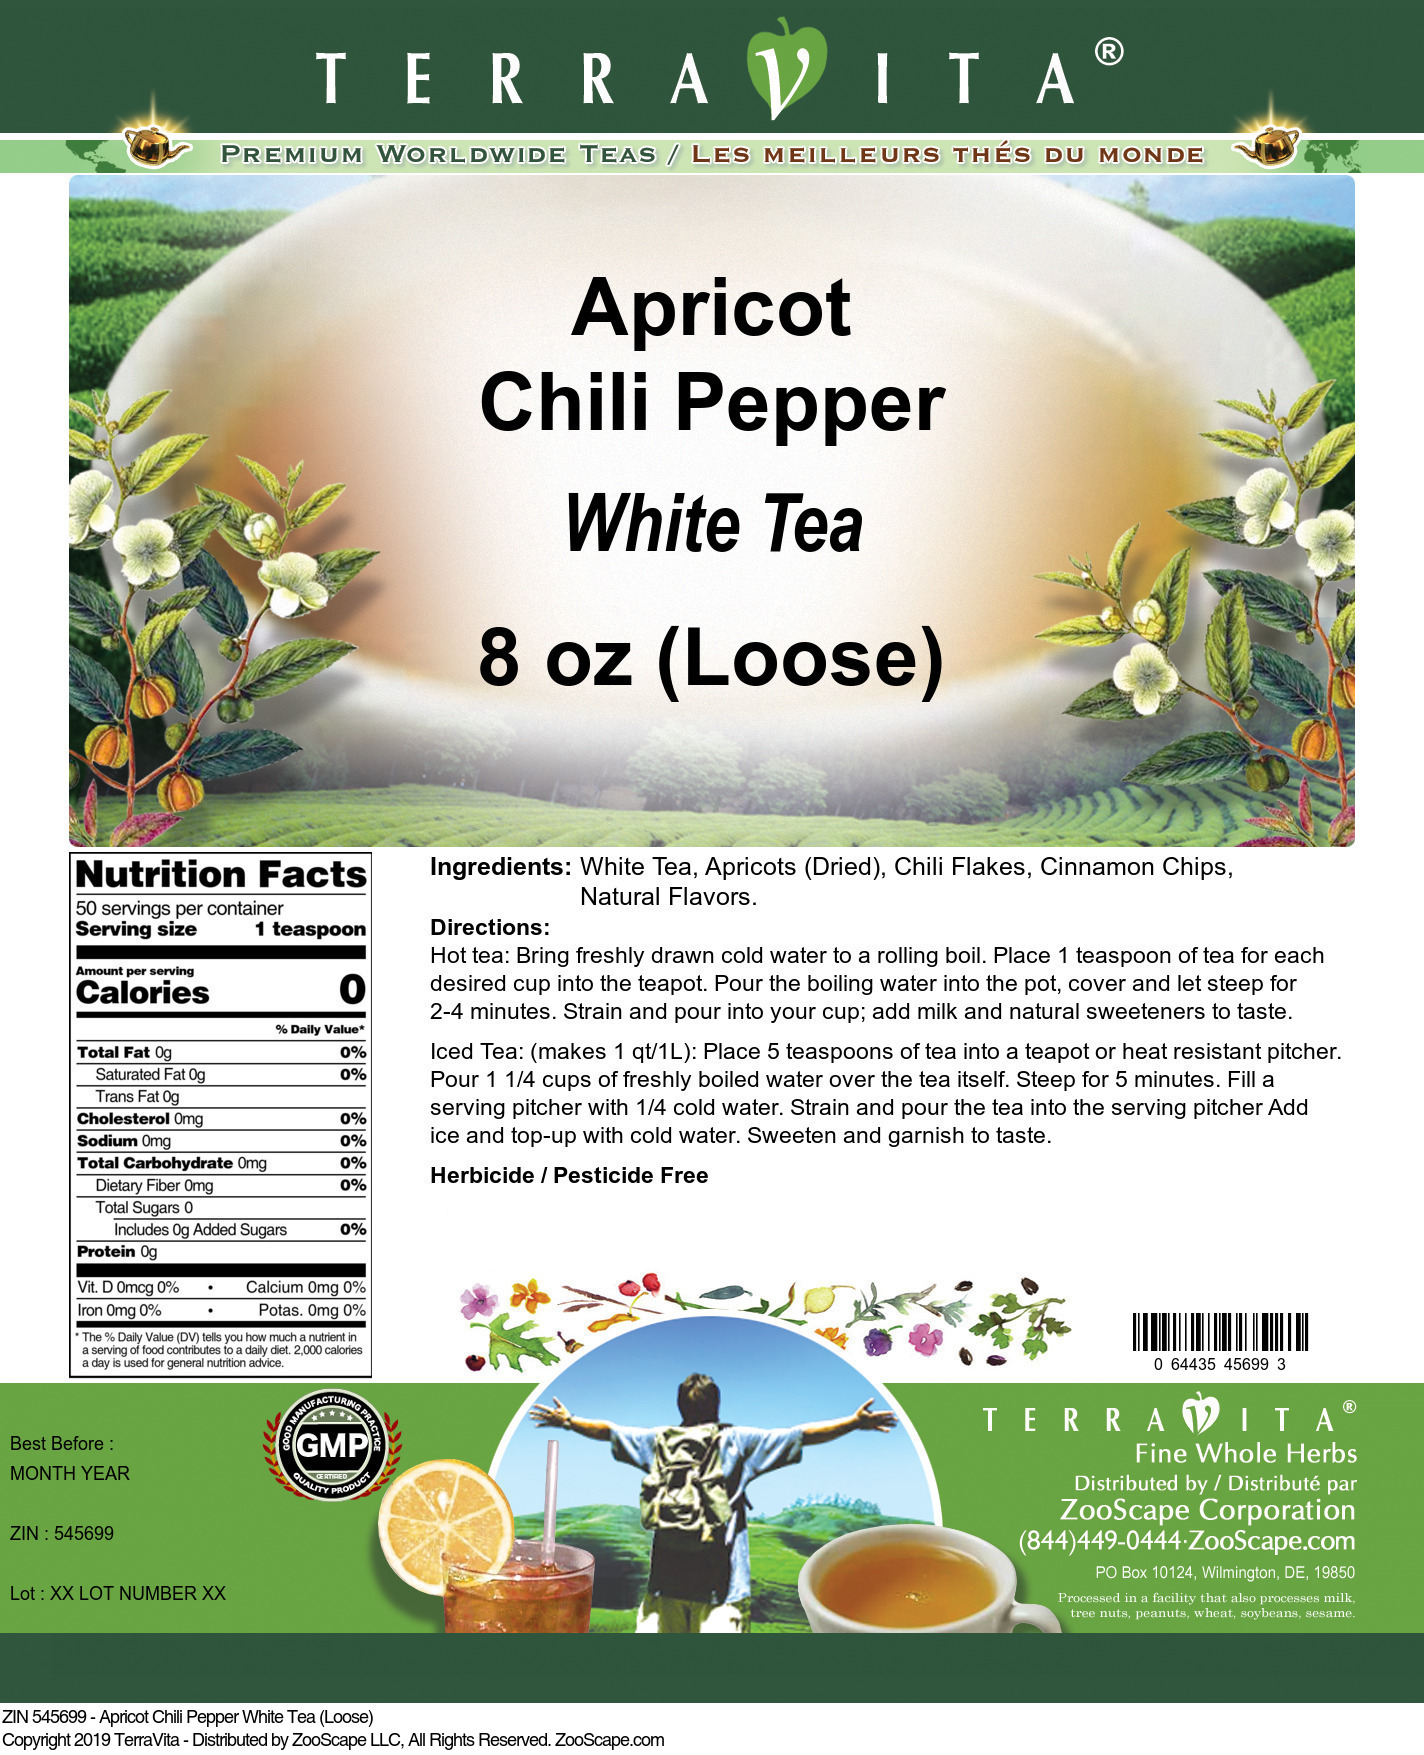 Apricot Chili Pepper White Tea (Loose) - Label